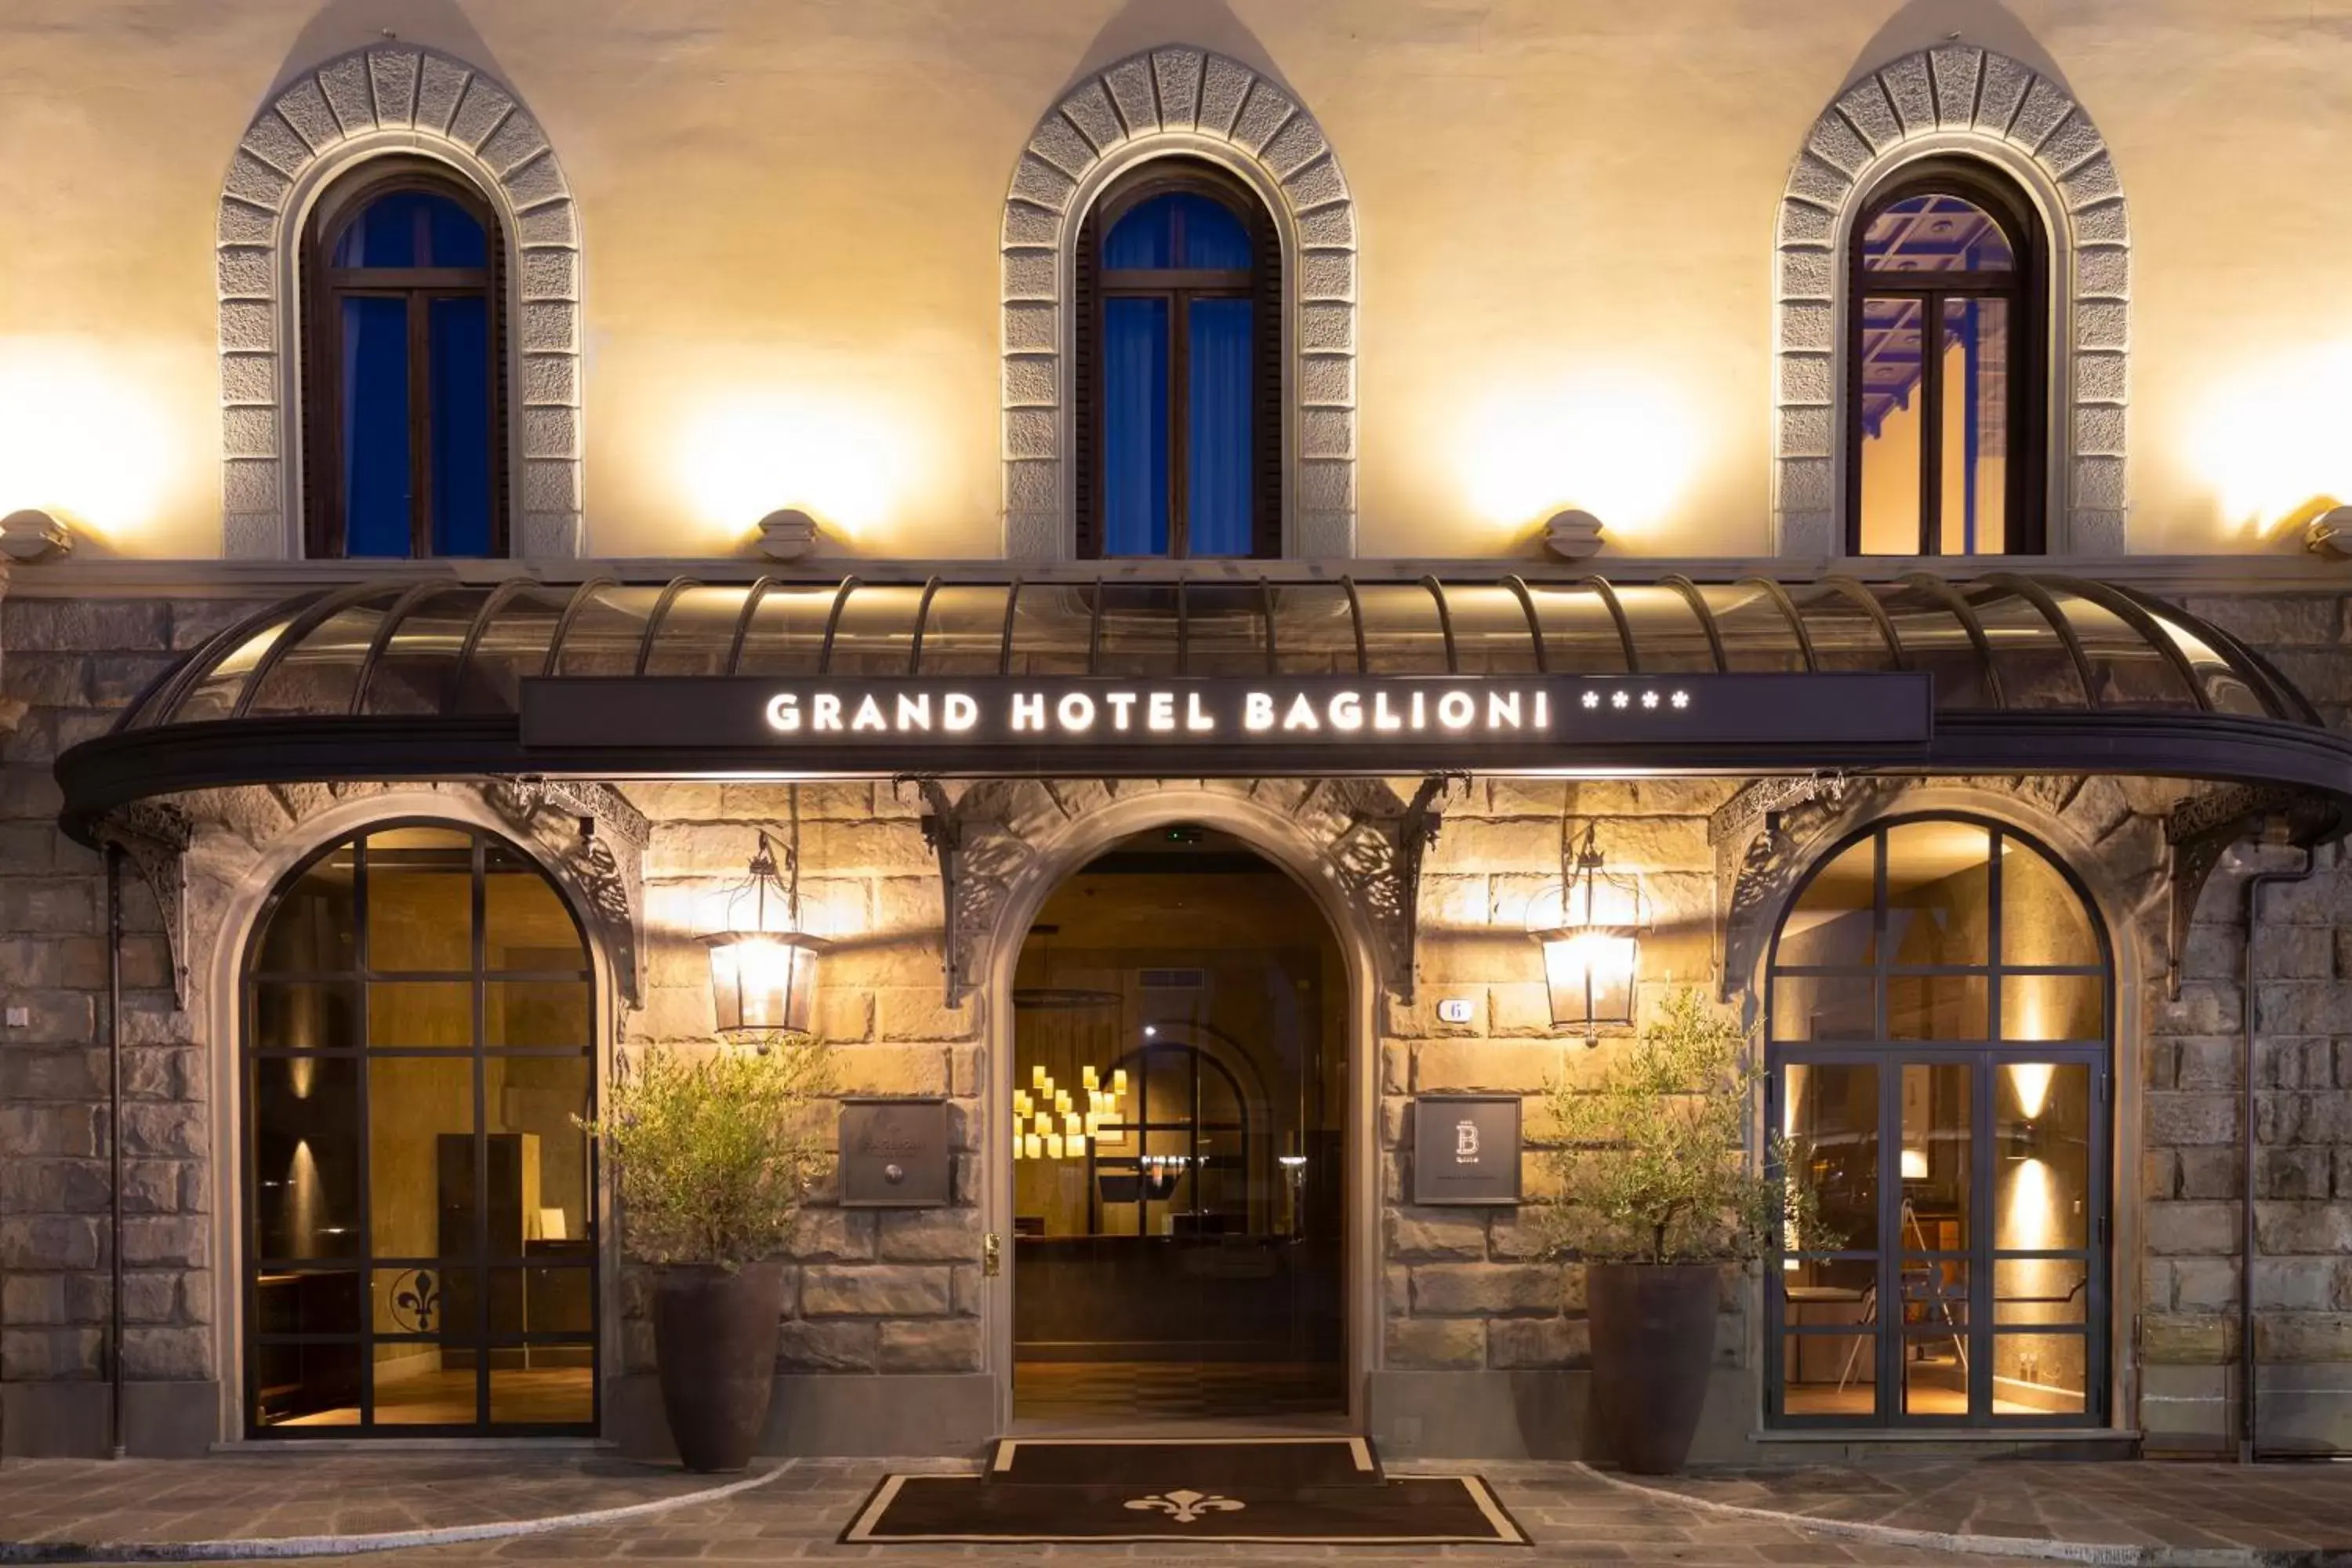 Facade/entrance in Grand Hotel Baglioni